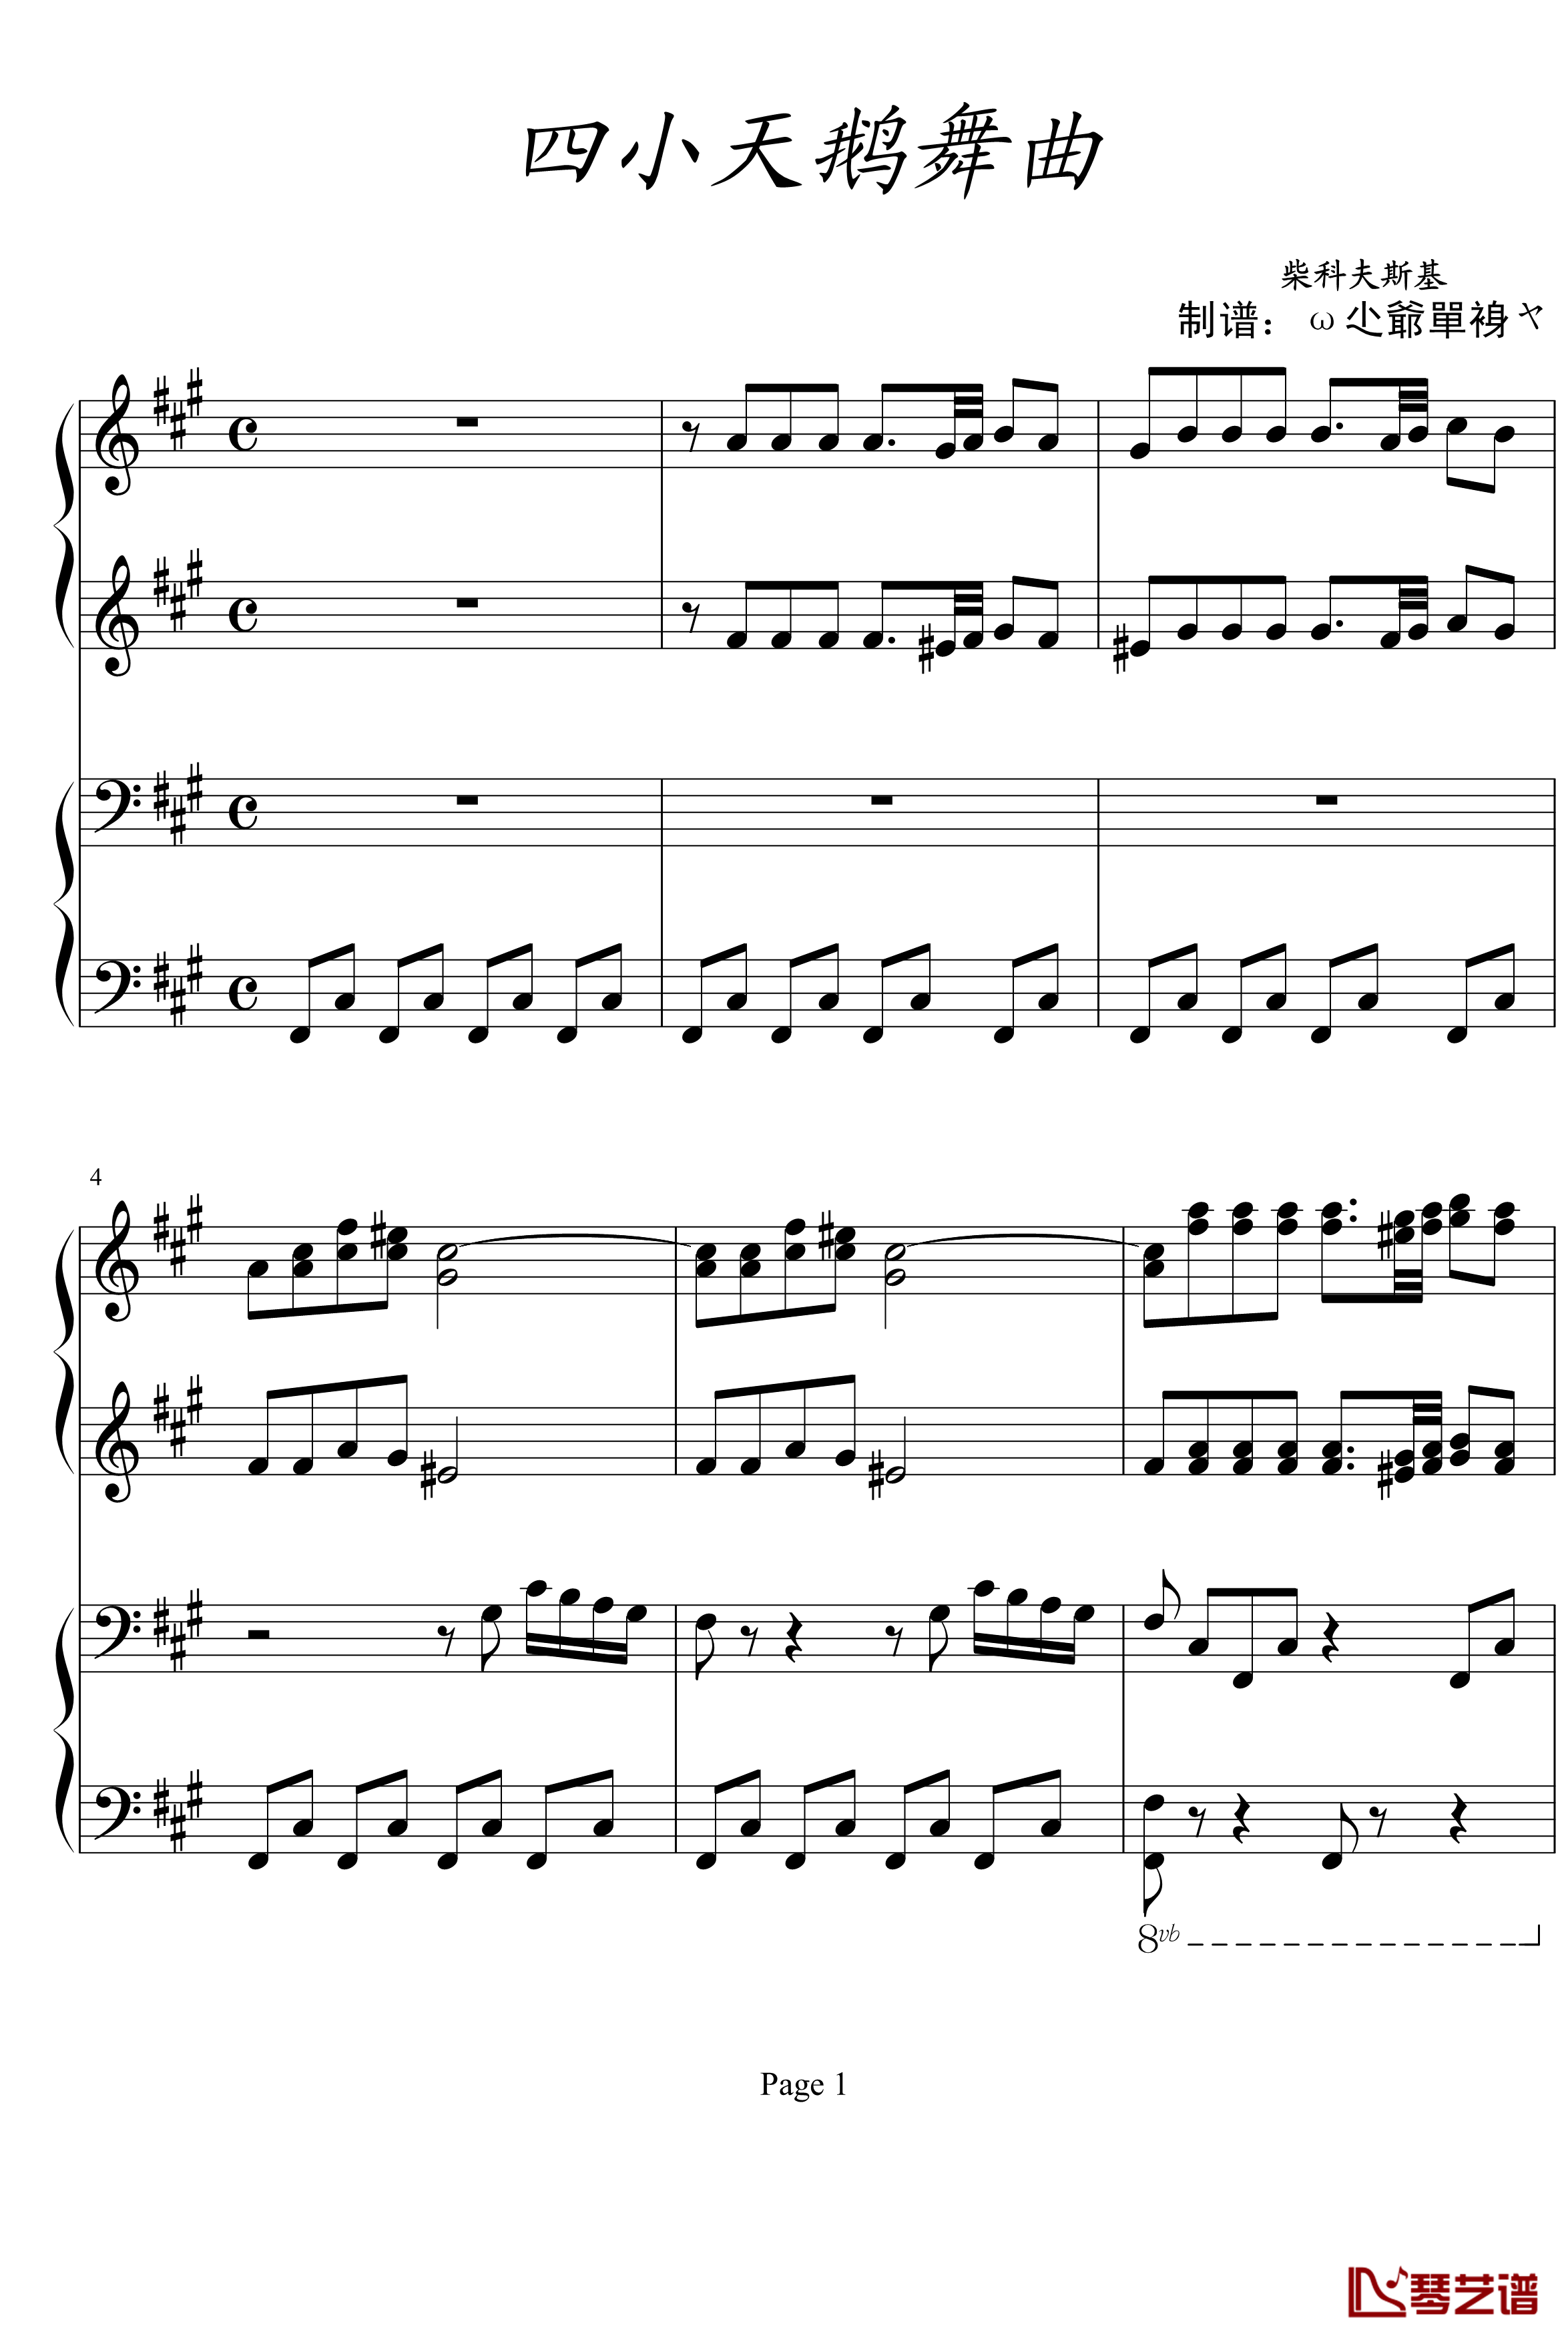 四小天鹅舞曲钢琴谱-柴科夫斯基-四手联弹版1